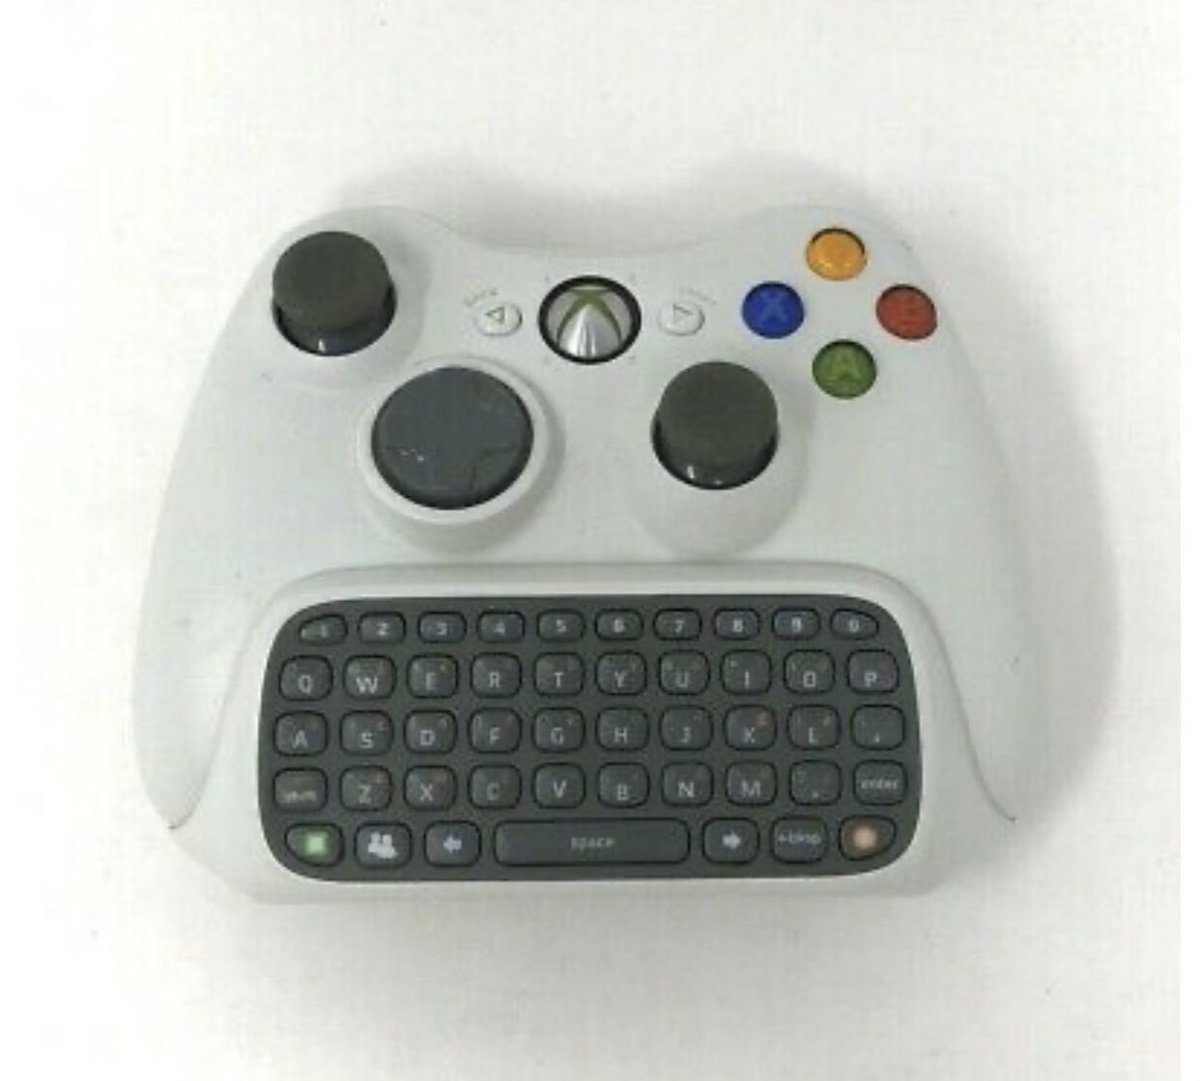 Джойстик xbox 360 к телефону. Клавиатура для Xbox 360. Клавиатура для геймпада Xbox 360. Клавиатура для иксбокс 360. Переключатель Speedshot мышь/клавиатура Xbox 360.